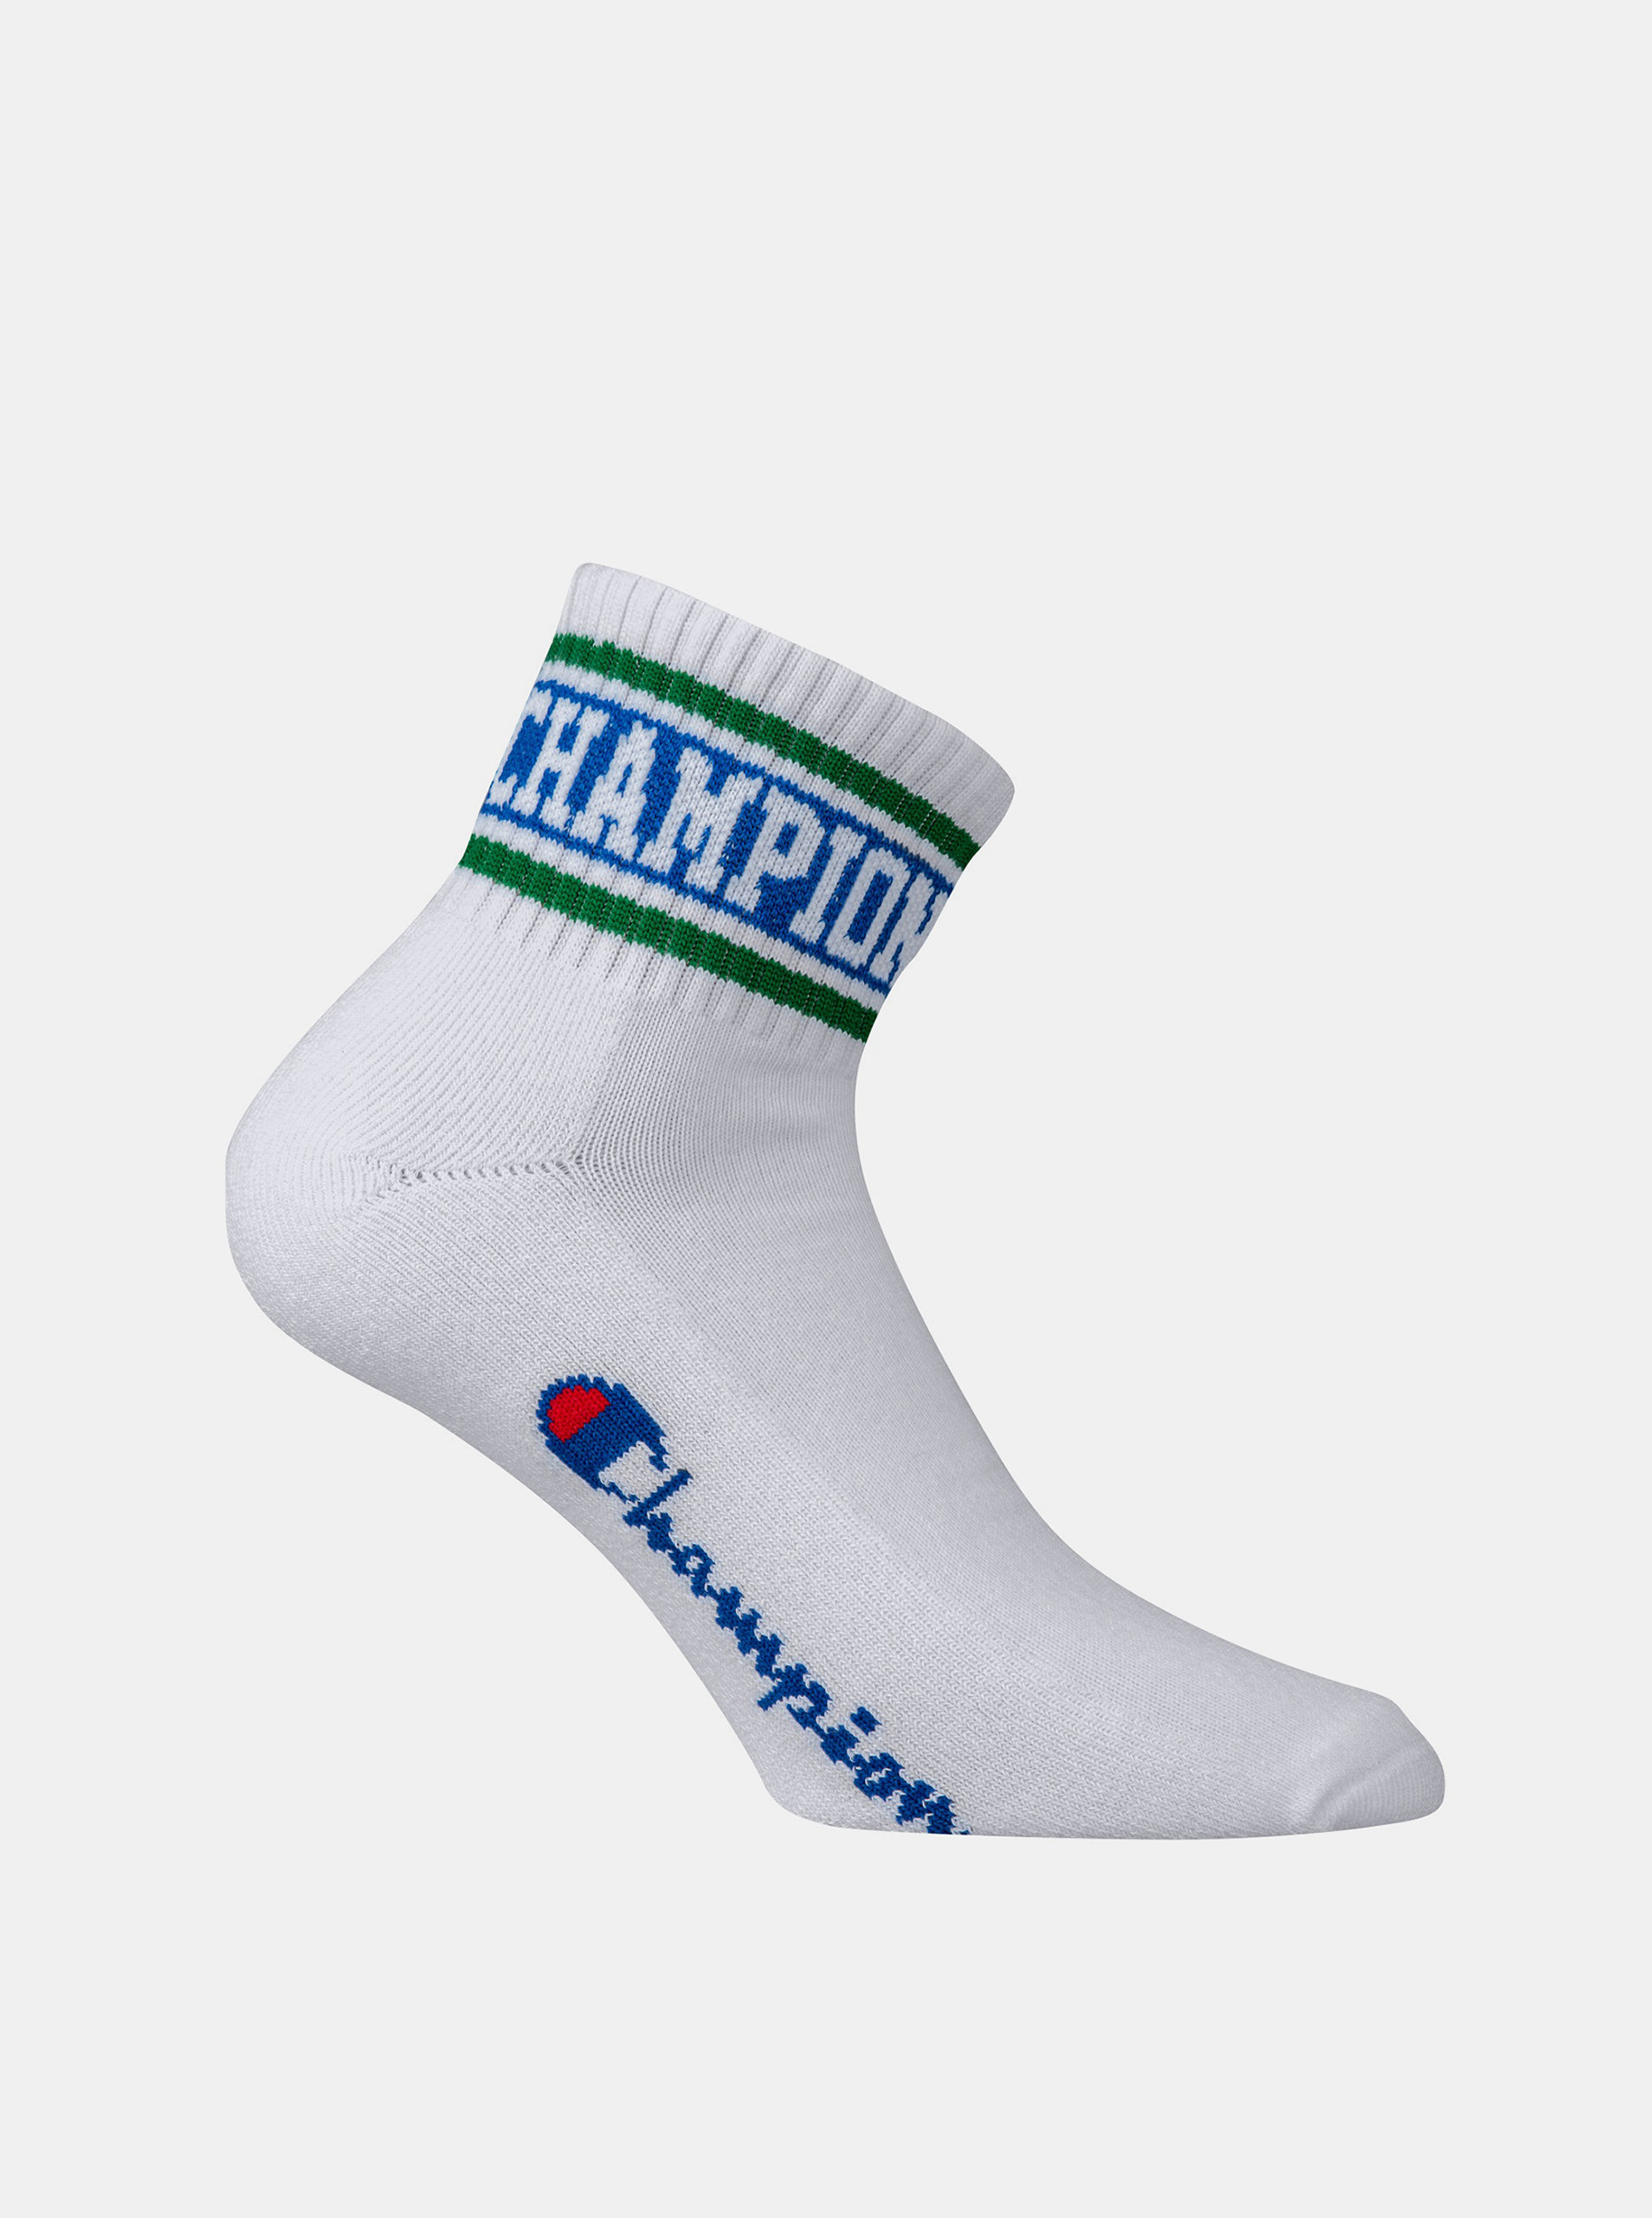 Fotografie CHAMPION ANKLE ROCHESTER OLD SCHOOL - Sportovní kotníkové ponožky 1 pár - bílá - zelená - modrá